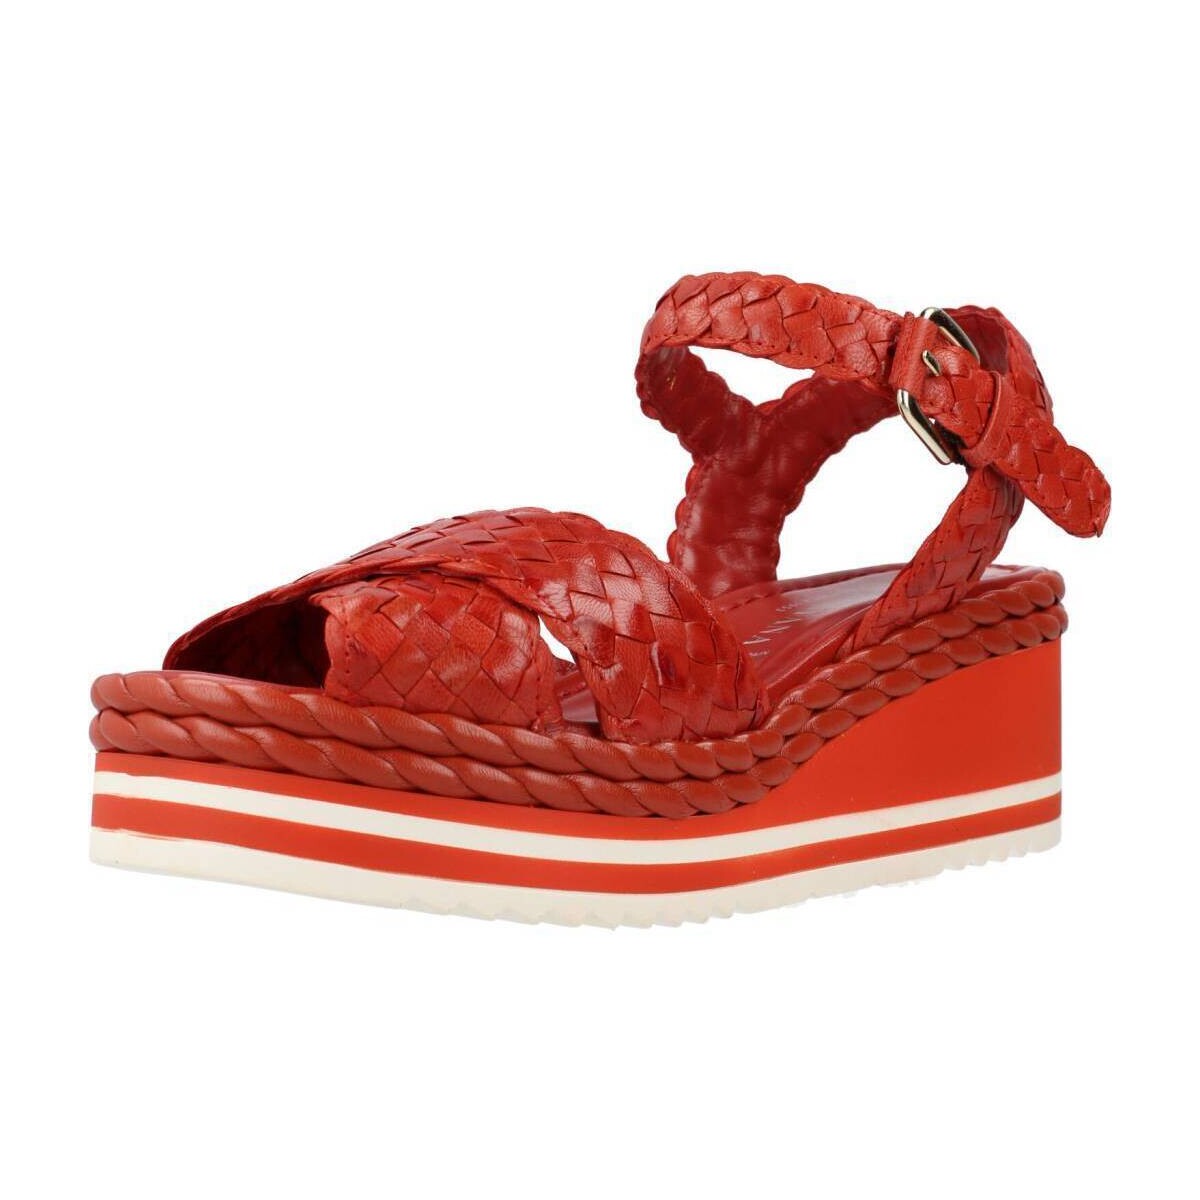 Zapatos Mujer Sandalias Pon´s Quintana PADOVA Rojo